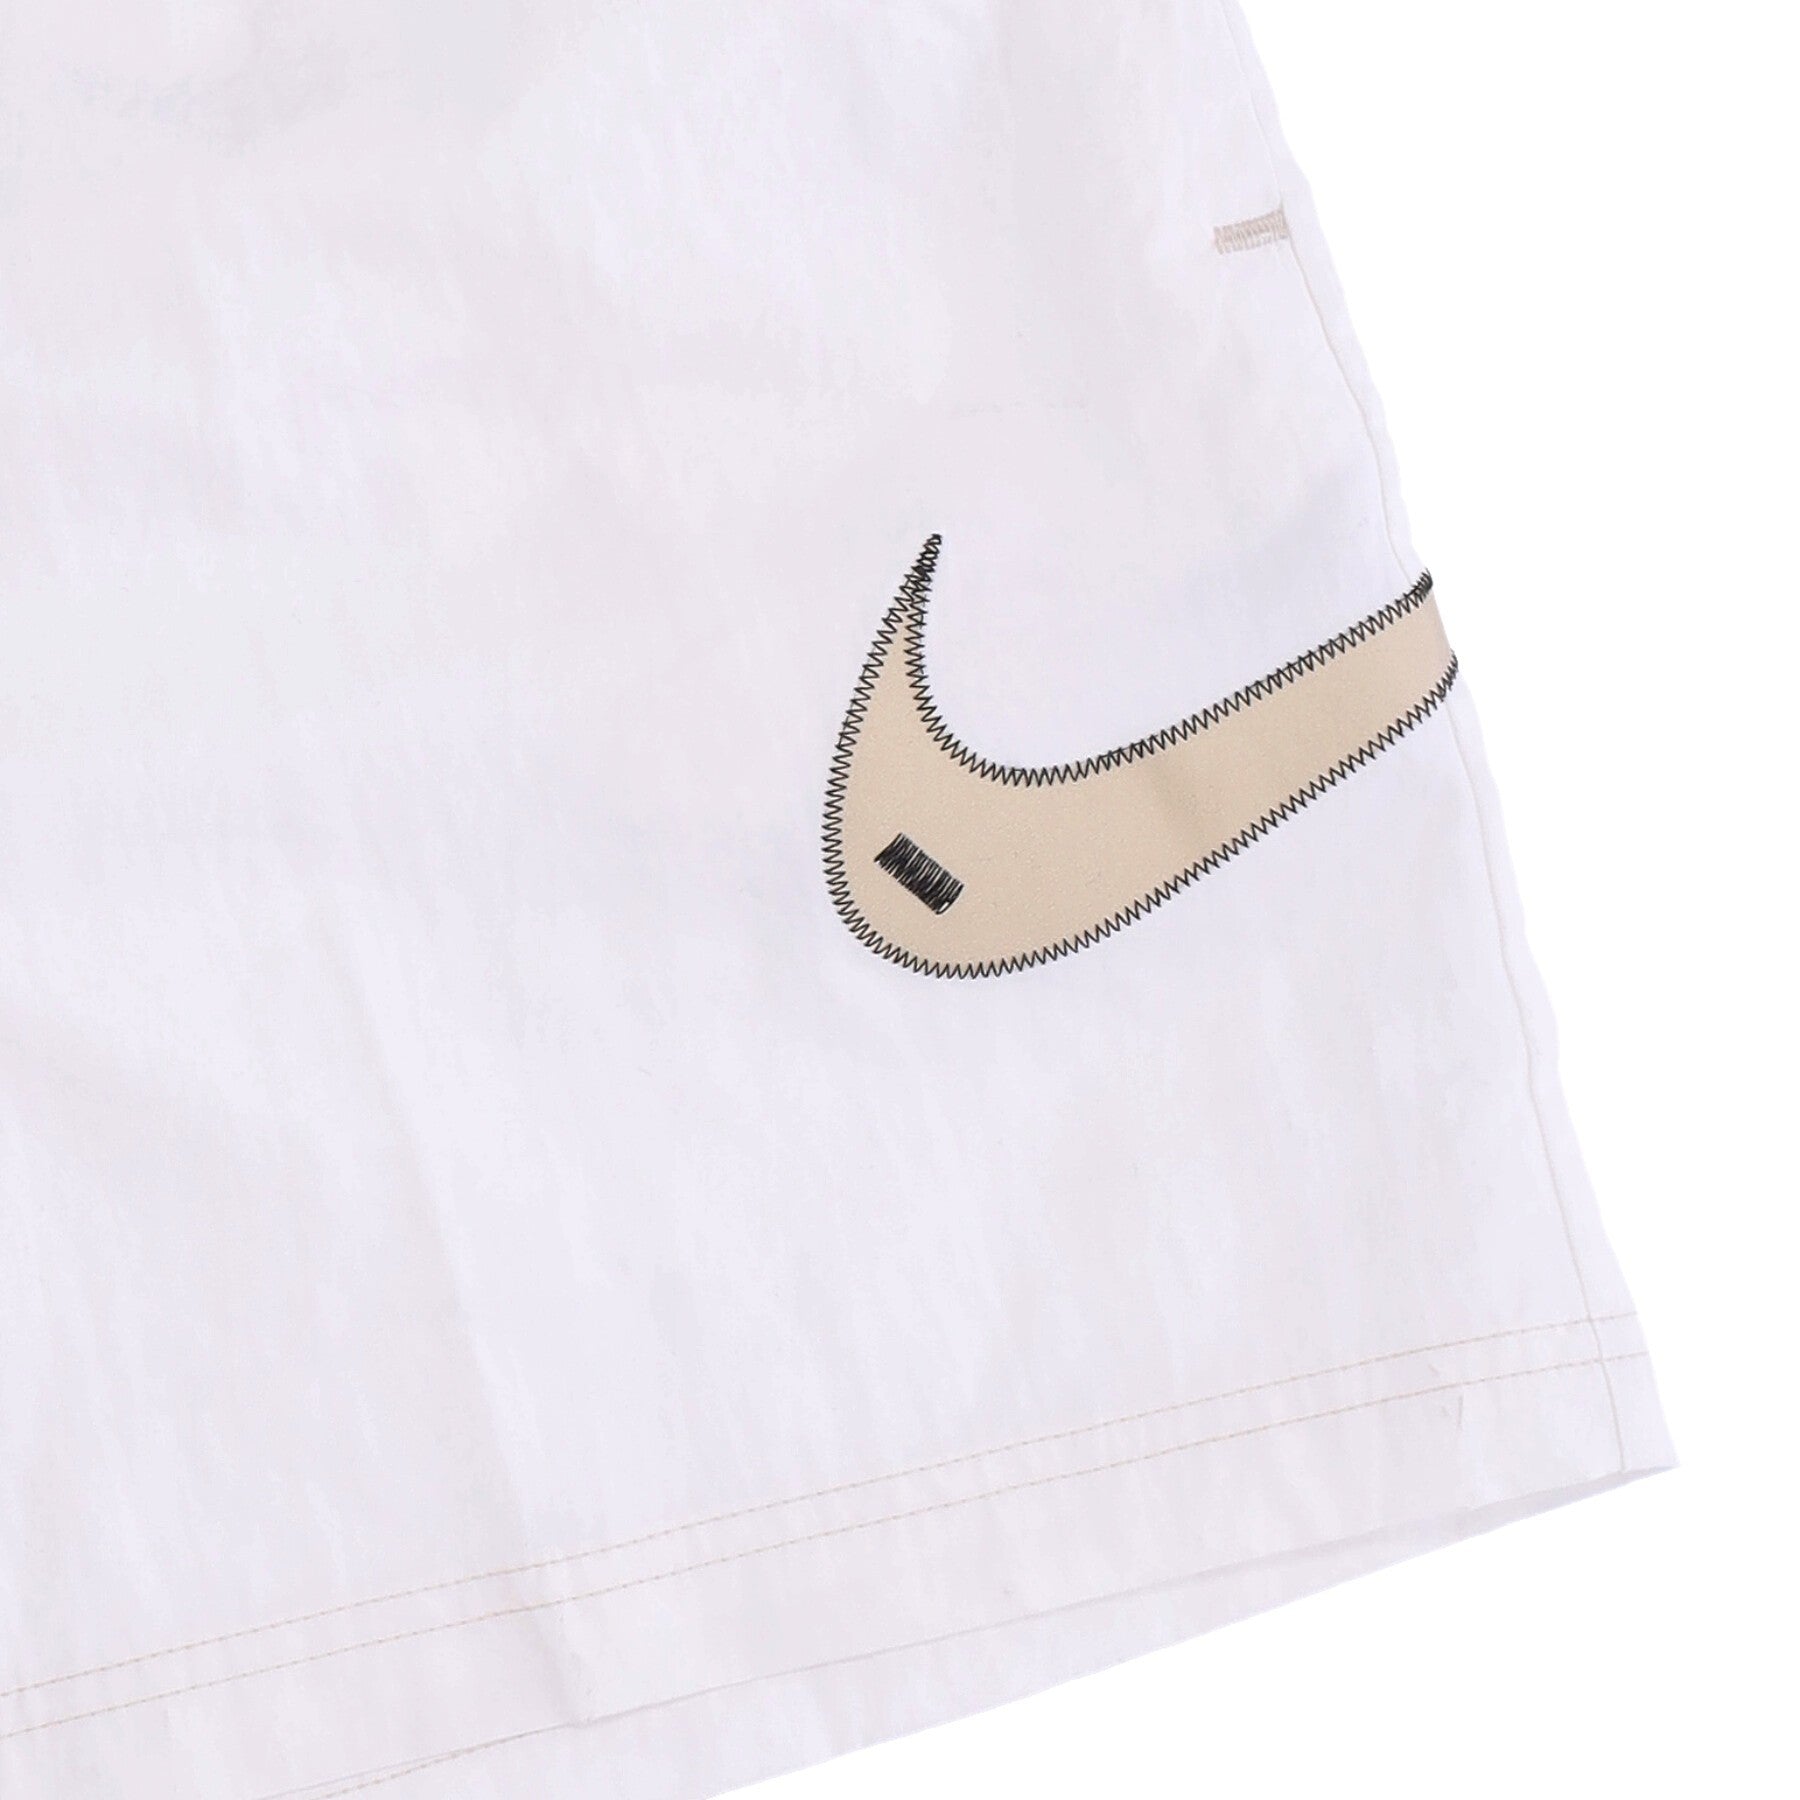 Nike, Pantaloncino Donna Sportswear Swoosh Woven High-rise Shorts, 